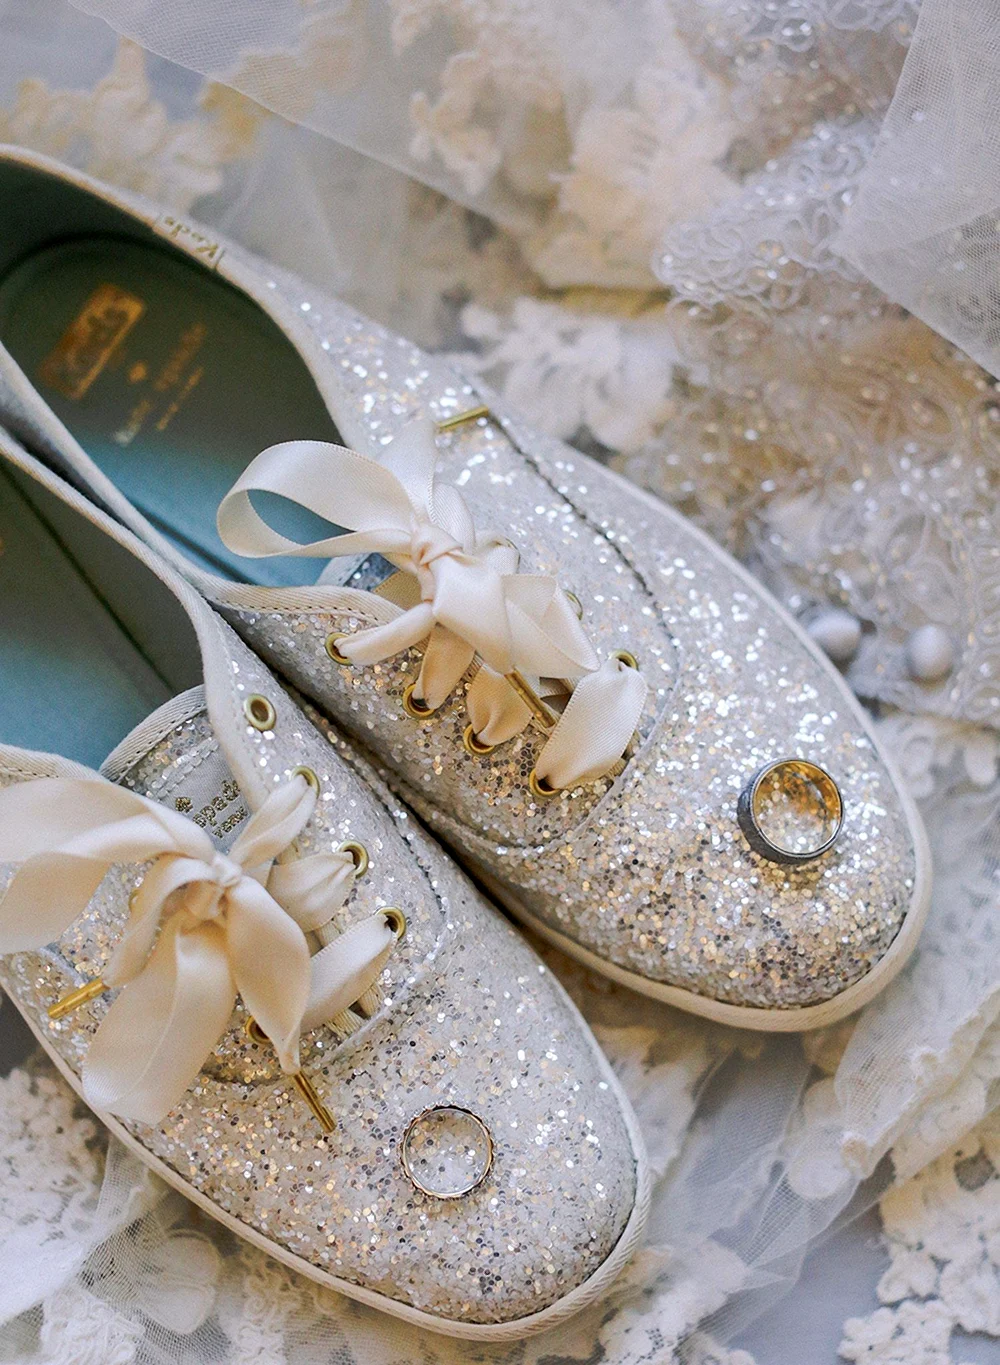 Обувь на свадьбу